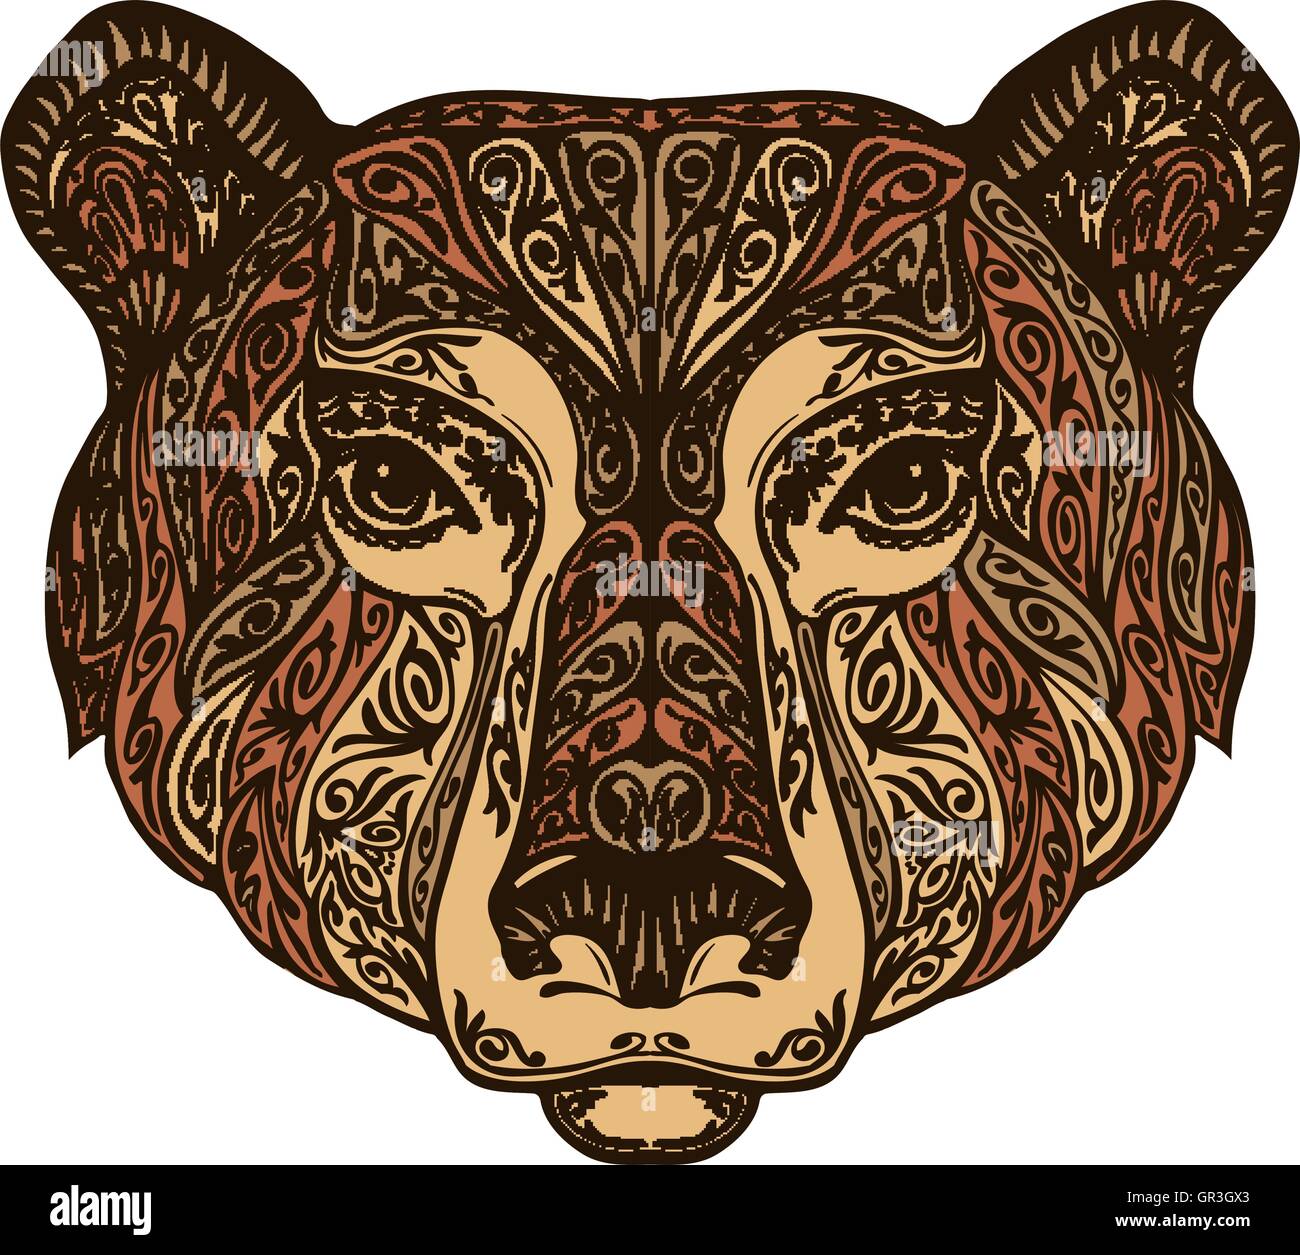 Kopf tragen. Ethno-Mustern. Handgezeichnete Vektor-Illustration mit floralen Elementen. Grizzly, Tier-symbol Stock Vektor